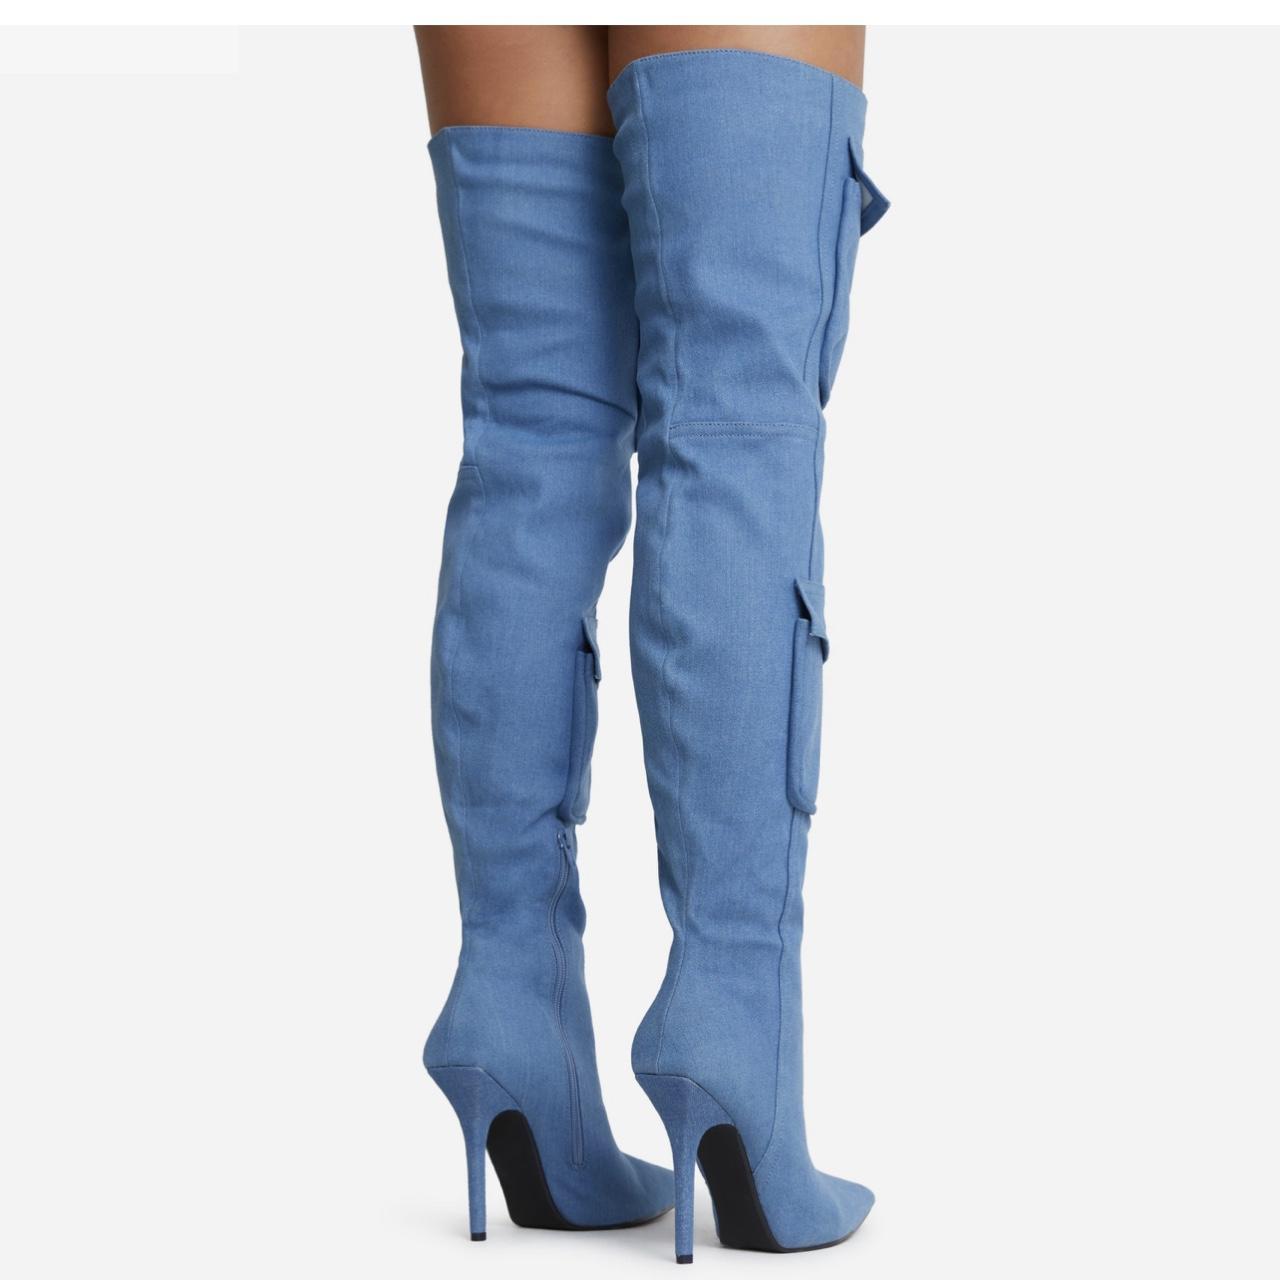 ego official knee high blue denim boots with pocket... - Depop